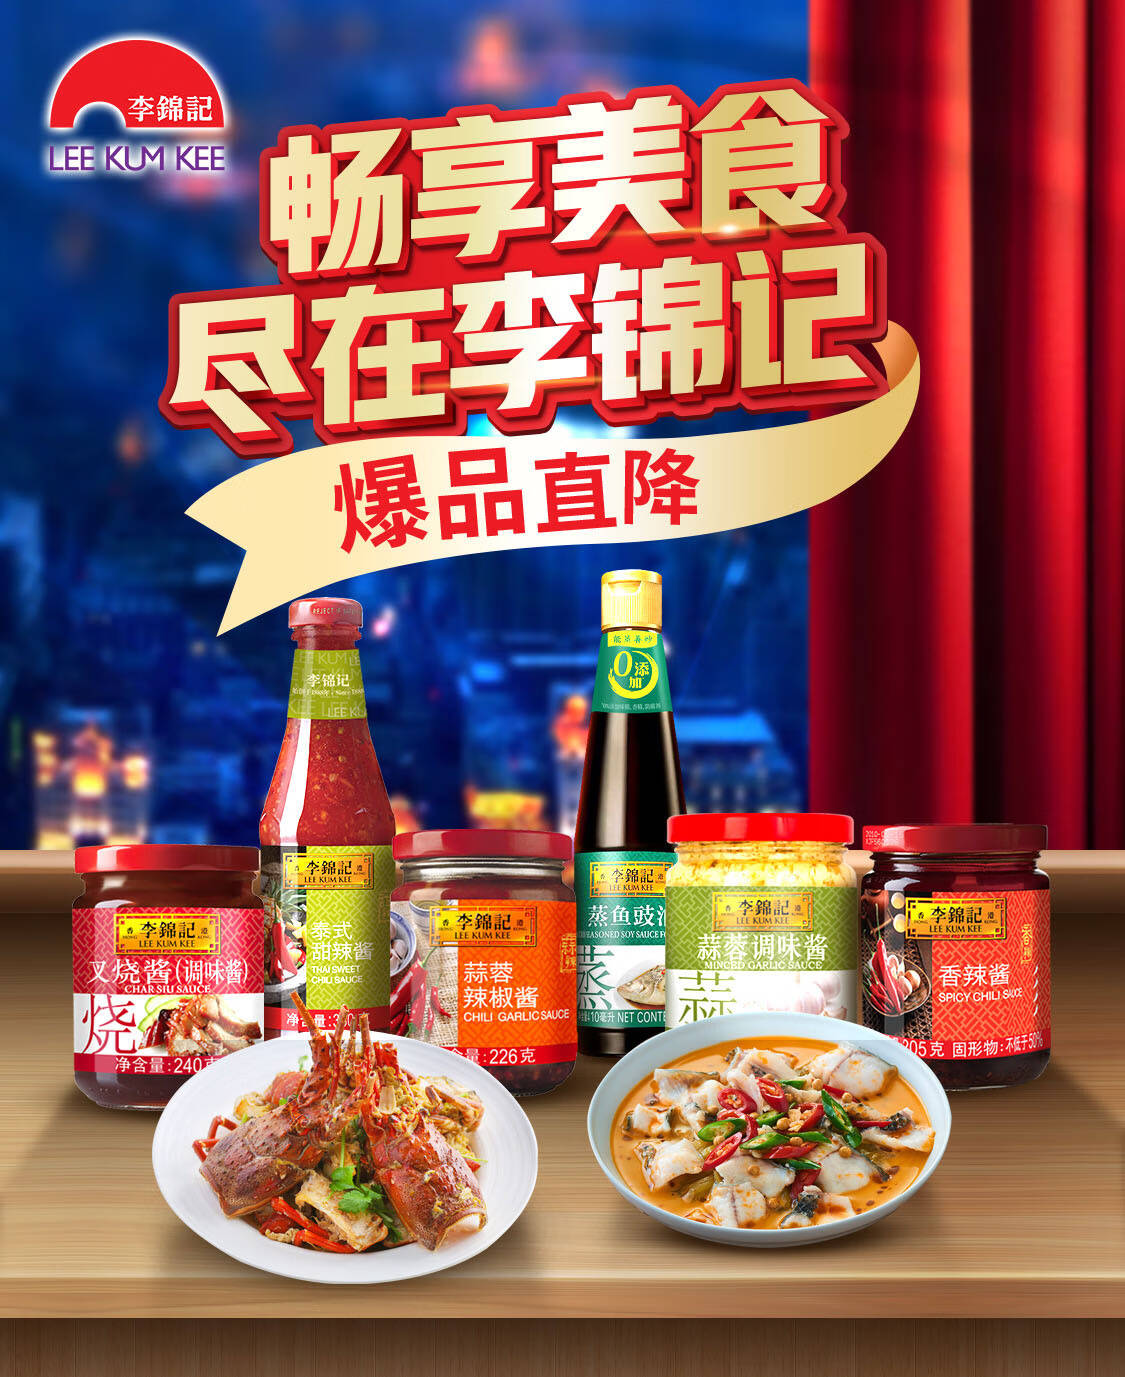 李锦记 苏梅酱(03.24) | LKK Plum Sauce 260g - HappyGo Asian Market